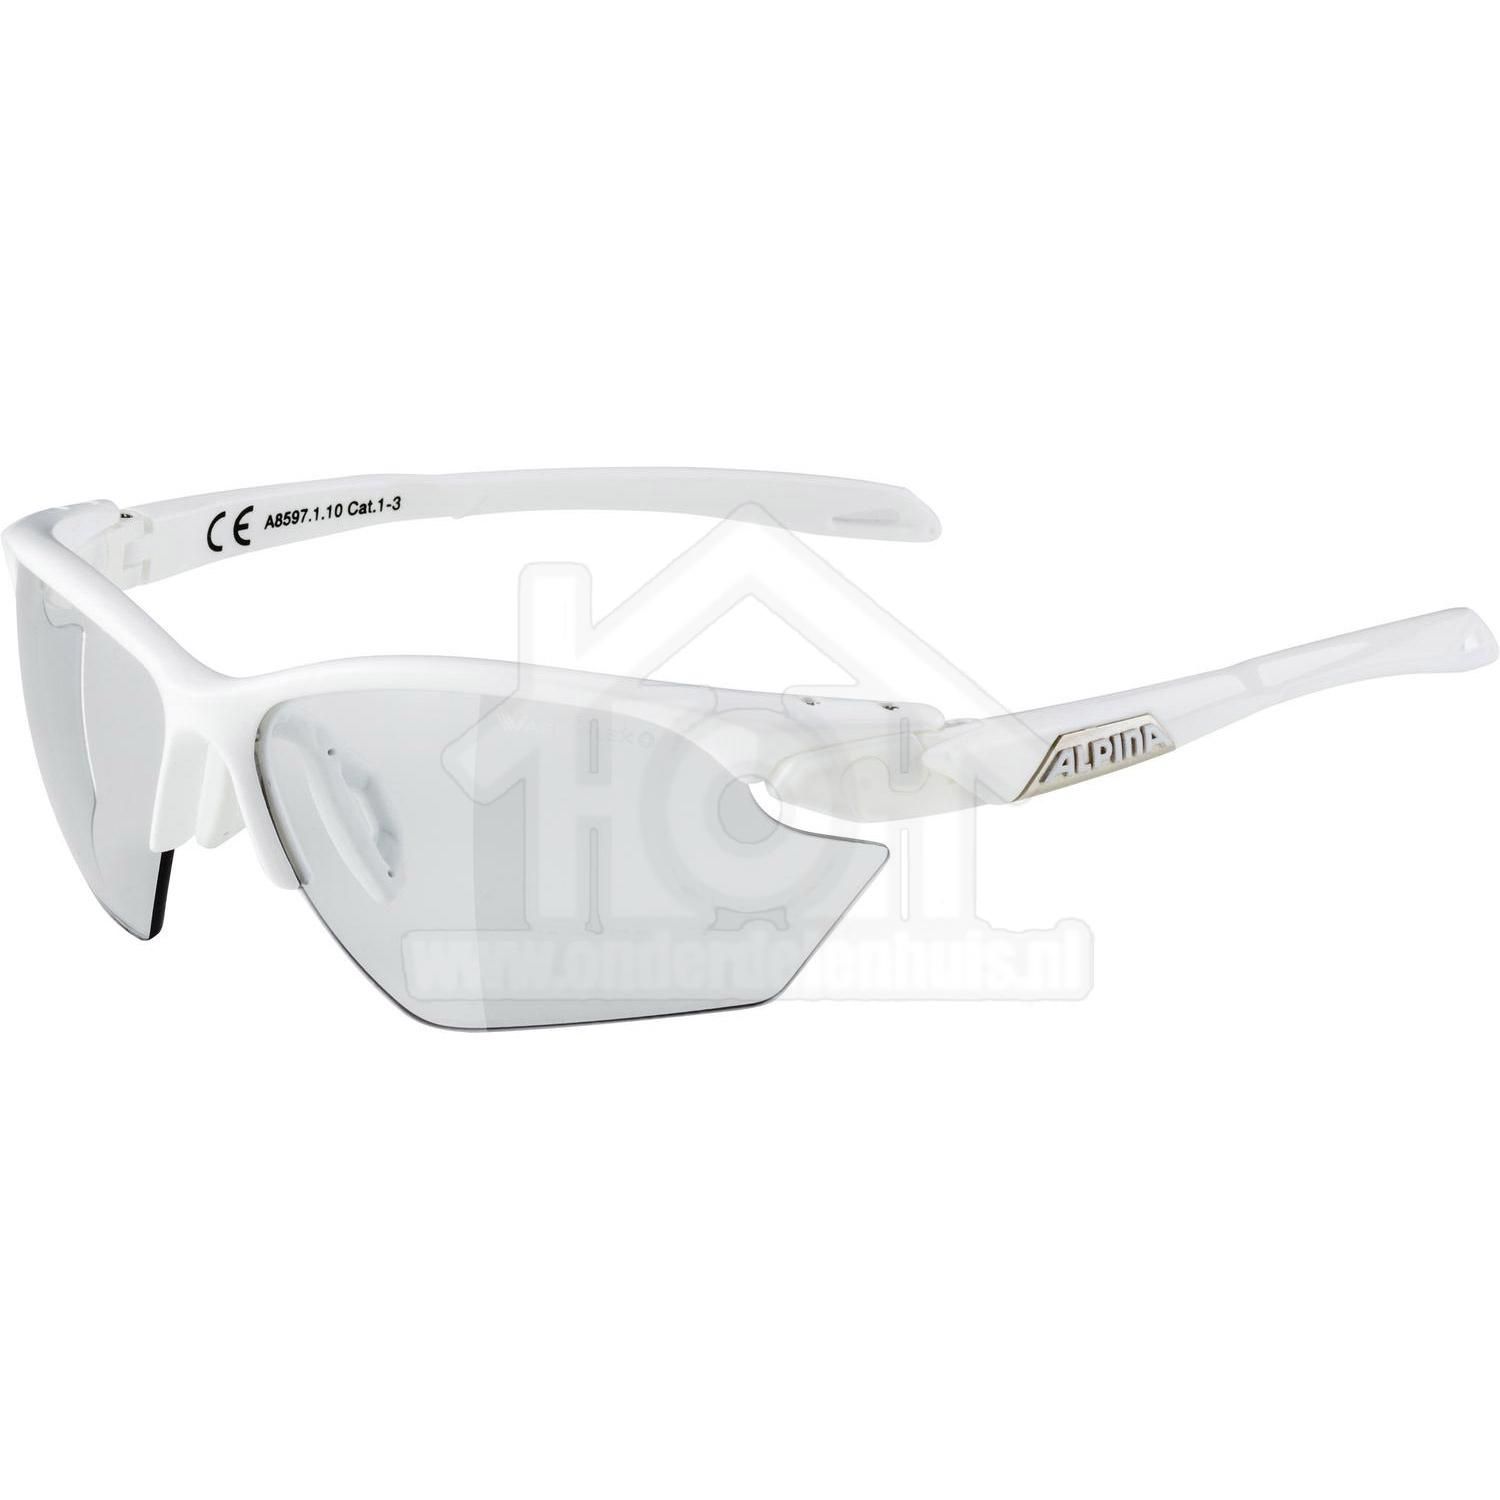 muur schoonmaken Nebu Alpina bril Twist Five HR S VL+ white Cat. 1-3 voor maar 99.95 kopen?